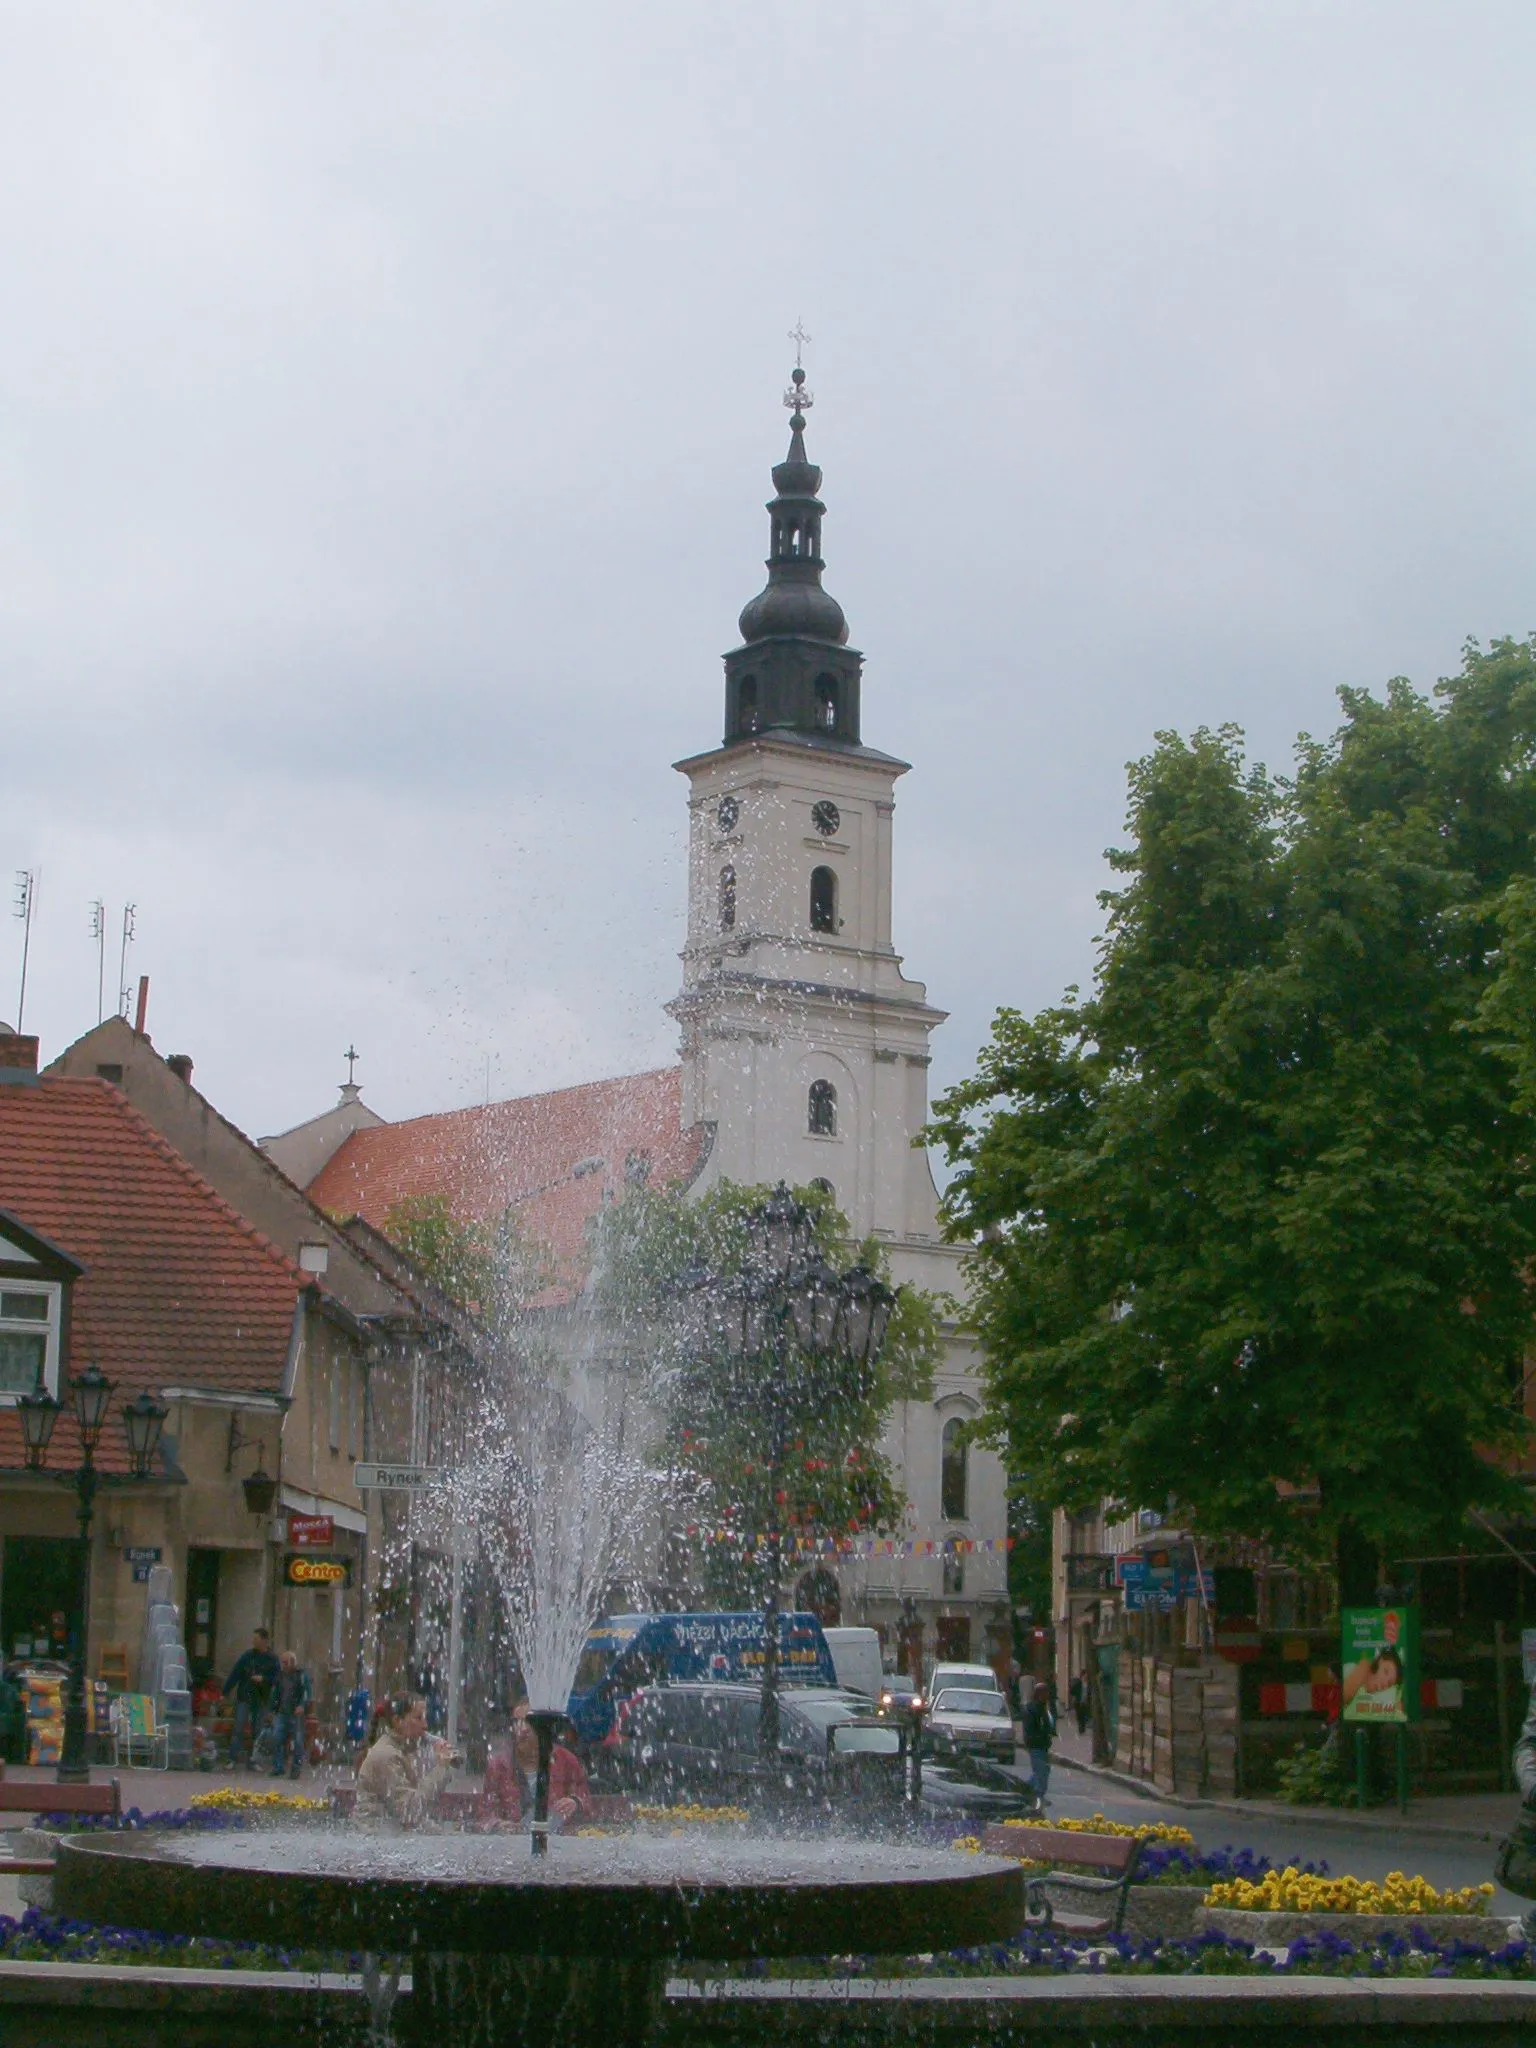 Photo showing: Fara Church in Wolsztyn, Poland